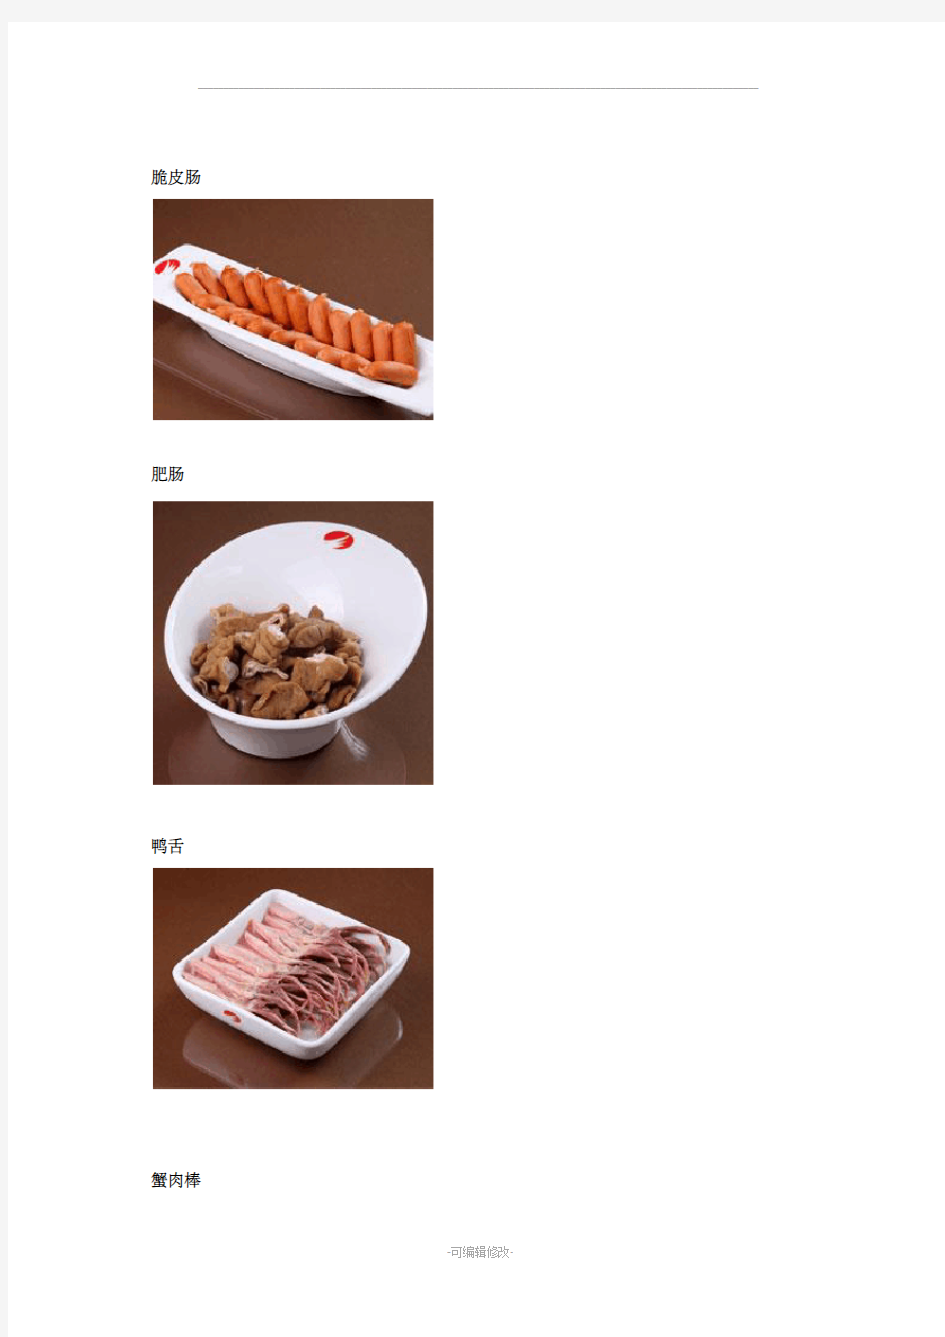 火锅经典菜品图片